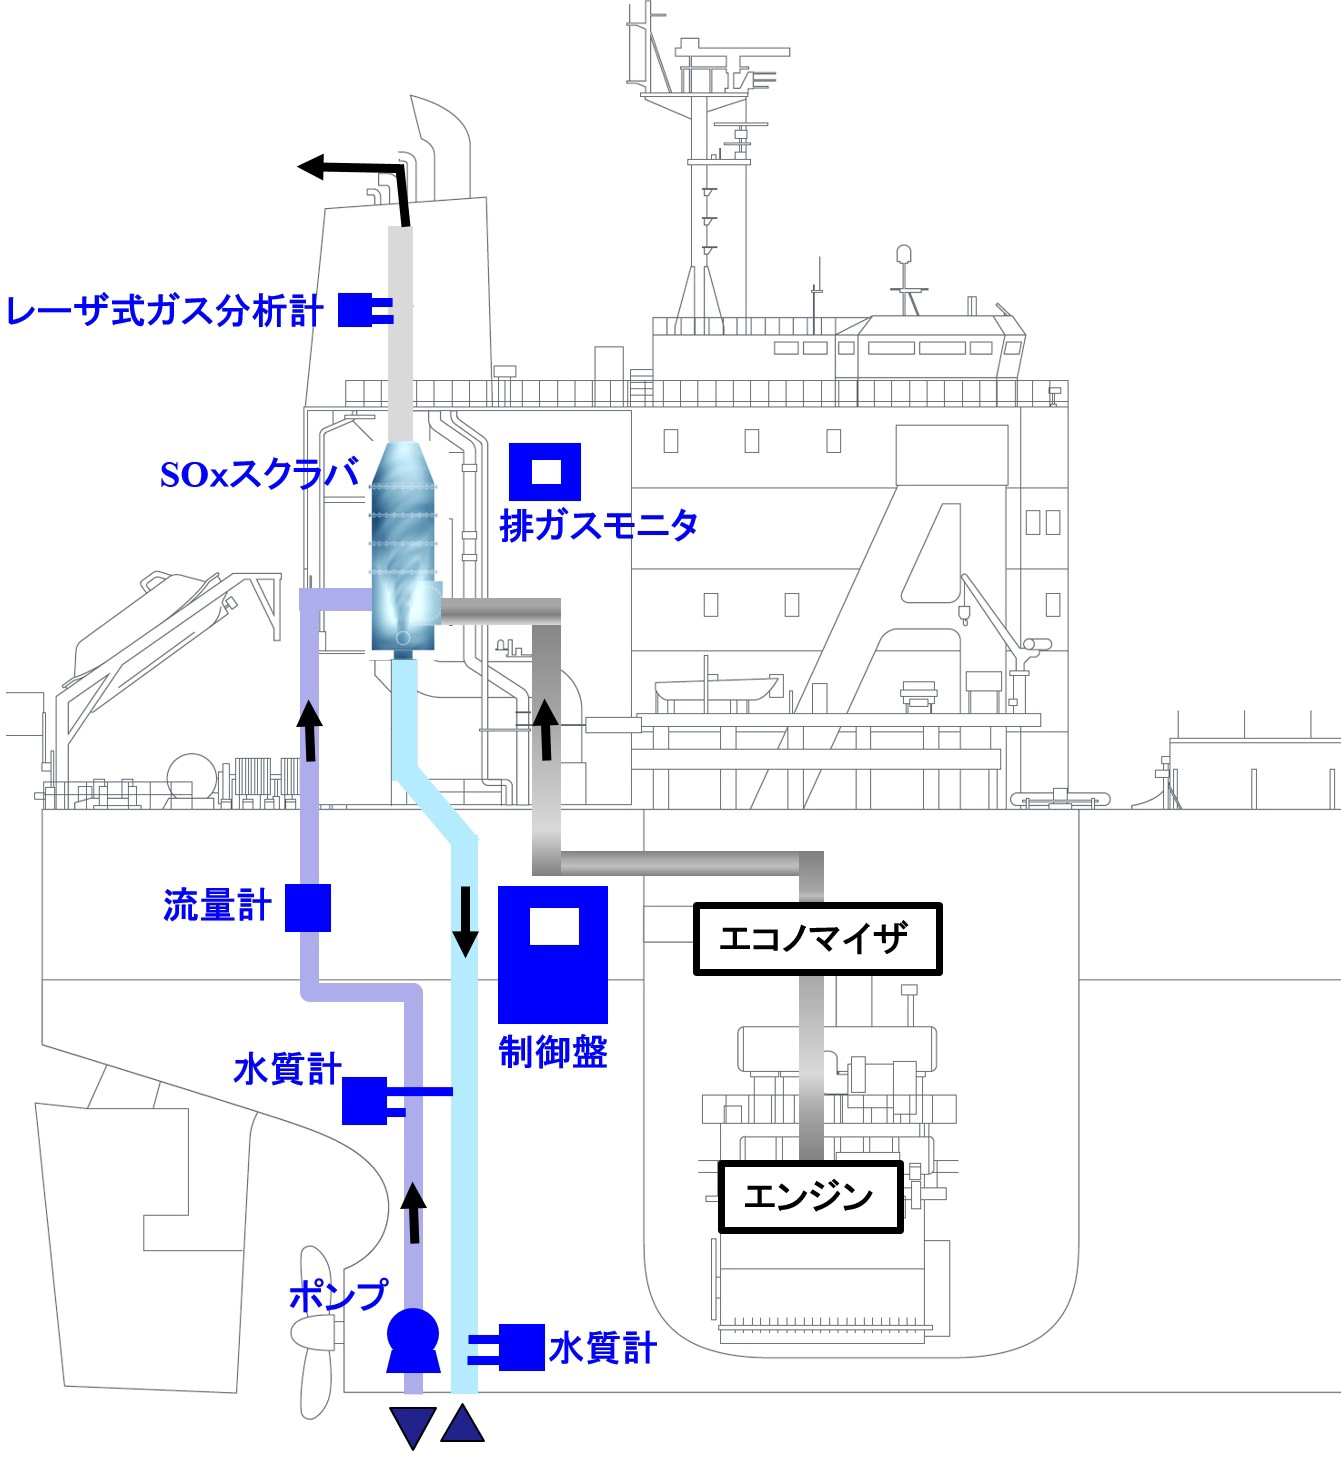 富士電機の排ガス浄化システム